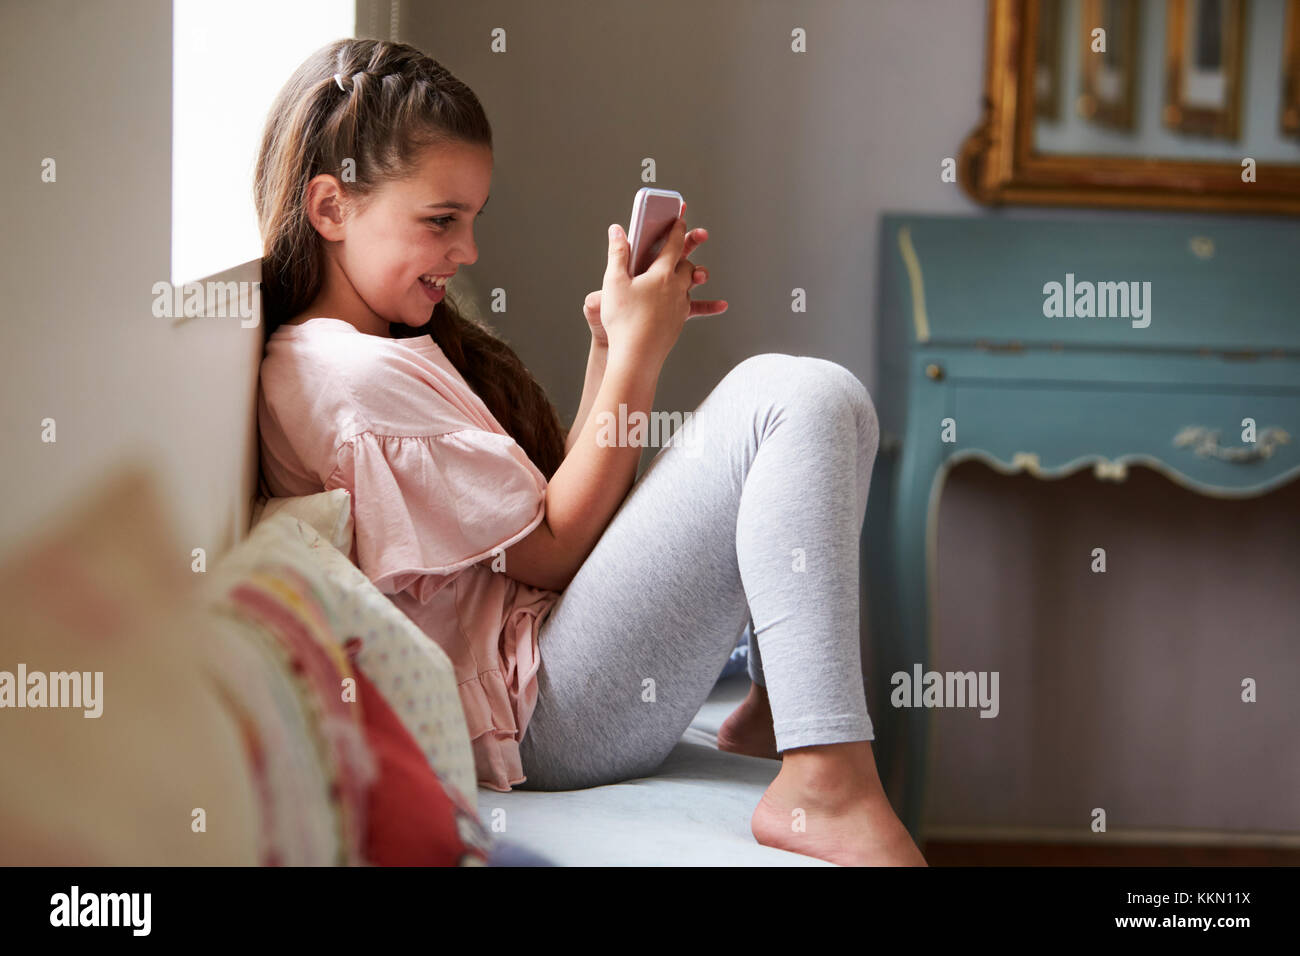 Sorridente ragazza seduta sul sedile finestra Riproduzione di gioco sul telefono cellulare Foto Stock